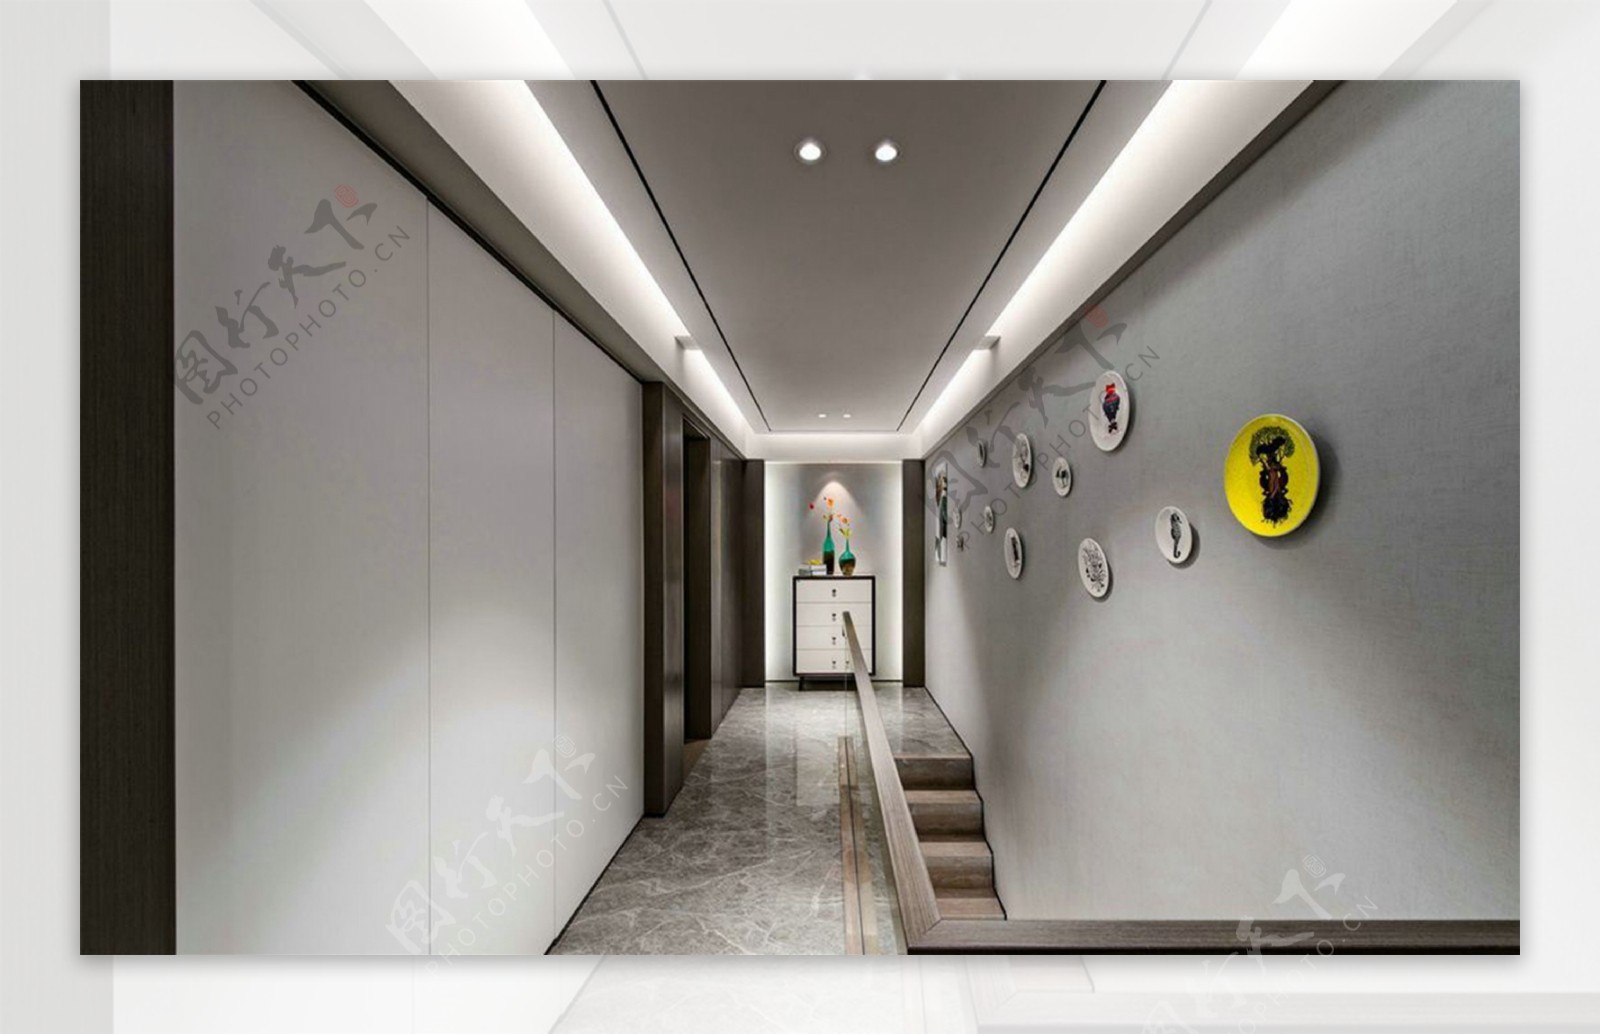 现代简约室内走廊背景墙设计图